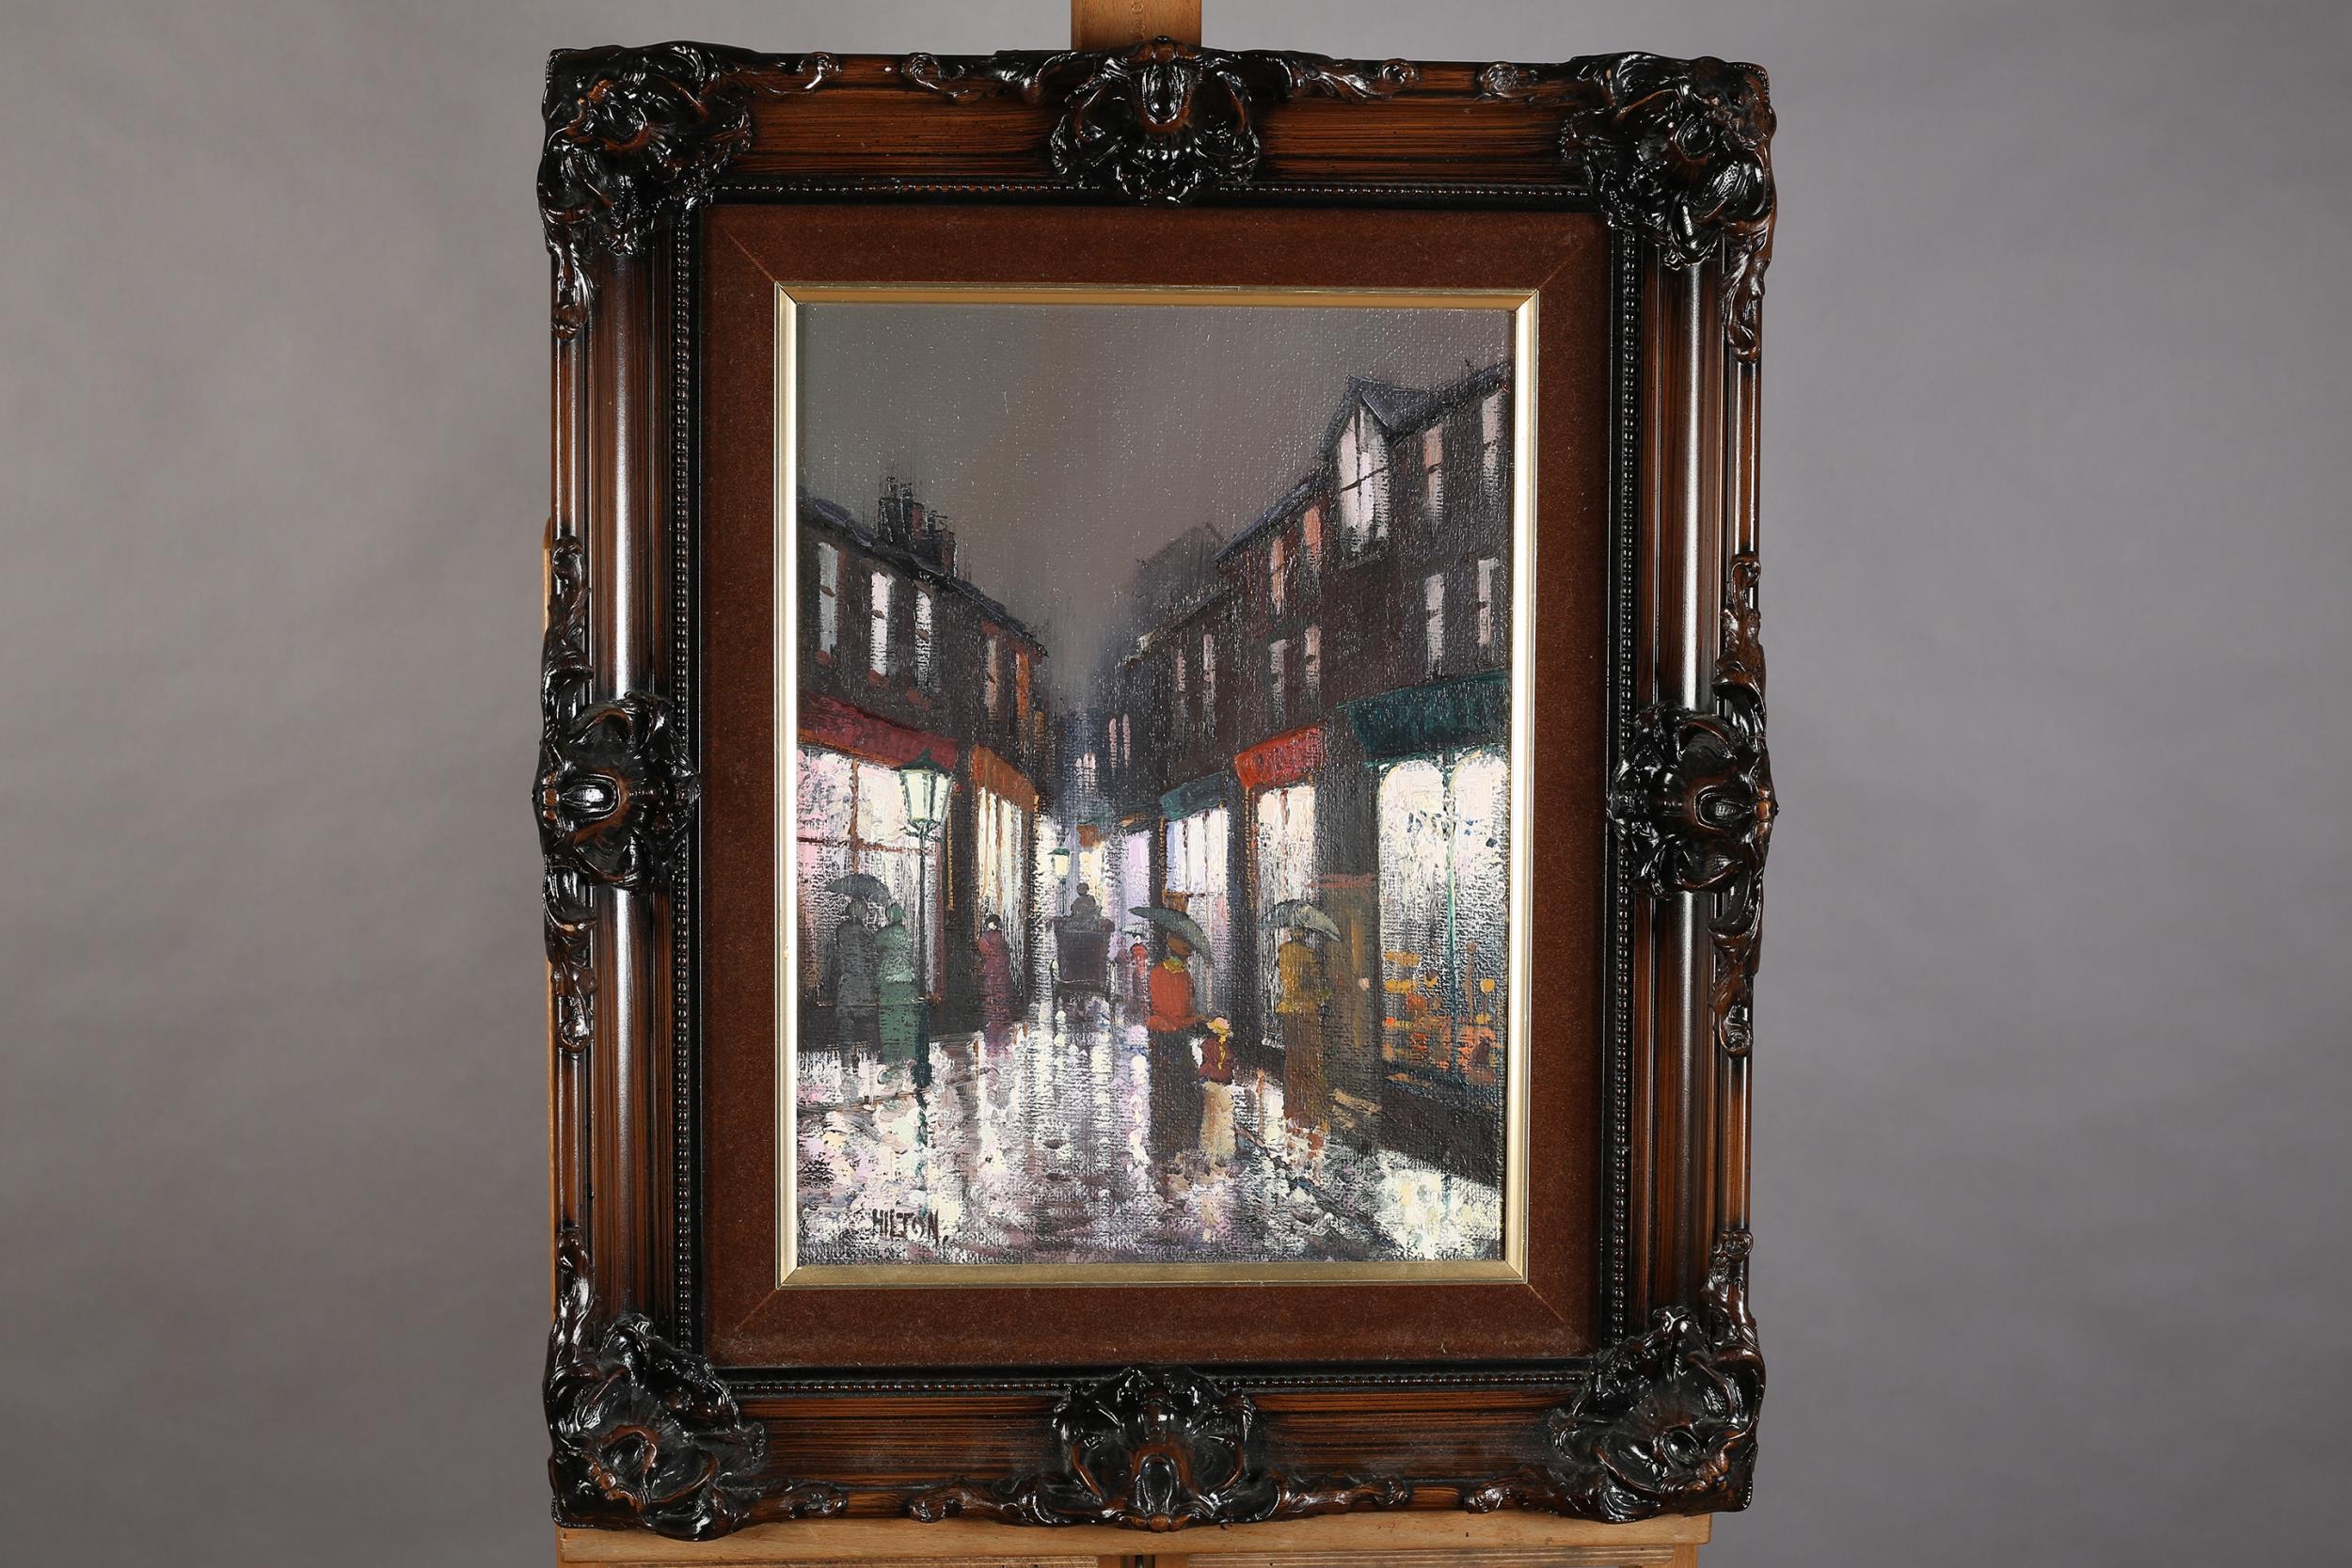 ARR Barry Hilton (b 1941), Edwardian street scene with figures on a rainy night, oil on canvas,